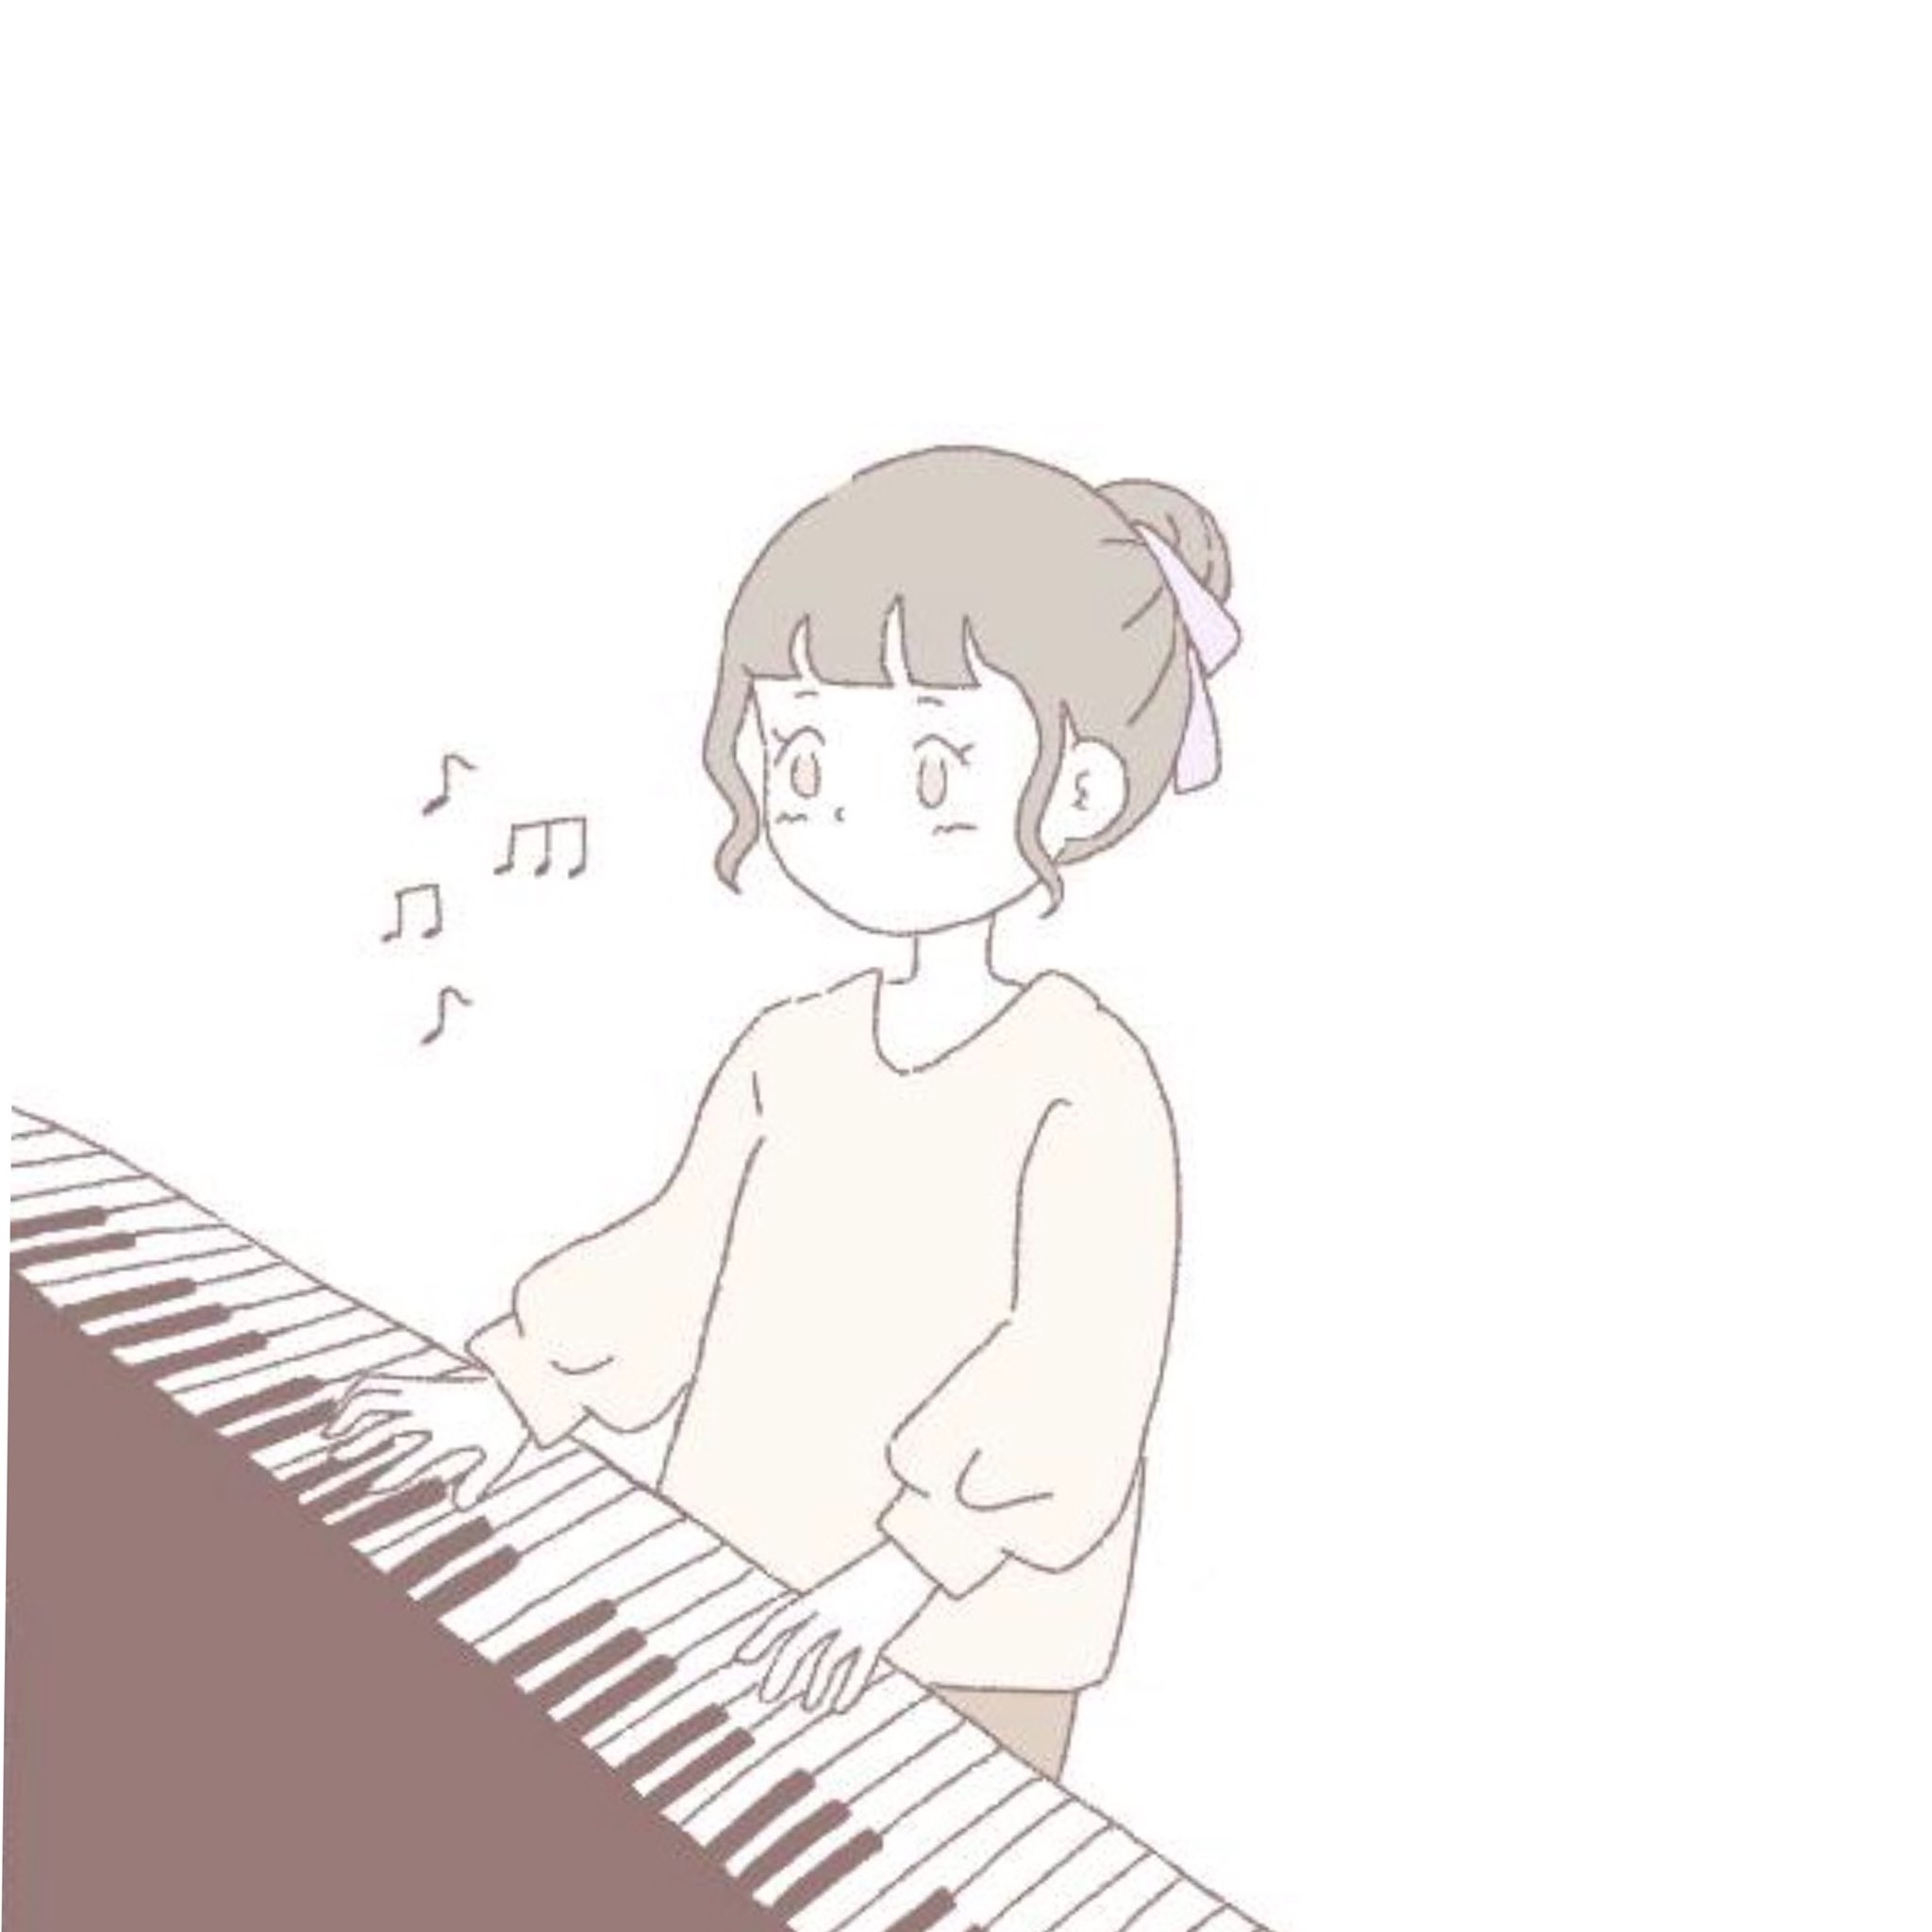 びーちゃん 上手な人が弾くピアノって 誰でも弾けるような簡単な曲でも感動する ピアノ歪んでる イラスト 女の子 ピアノ 音楽 T Co Uyeqbc0krg Twitter